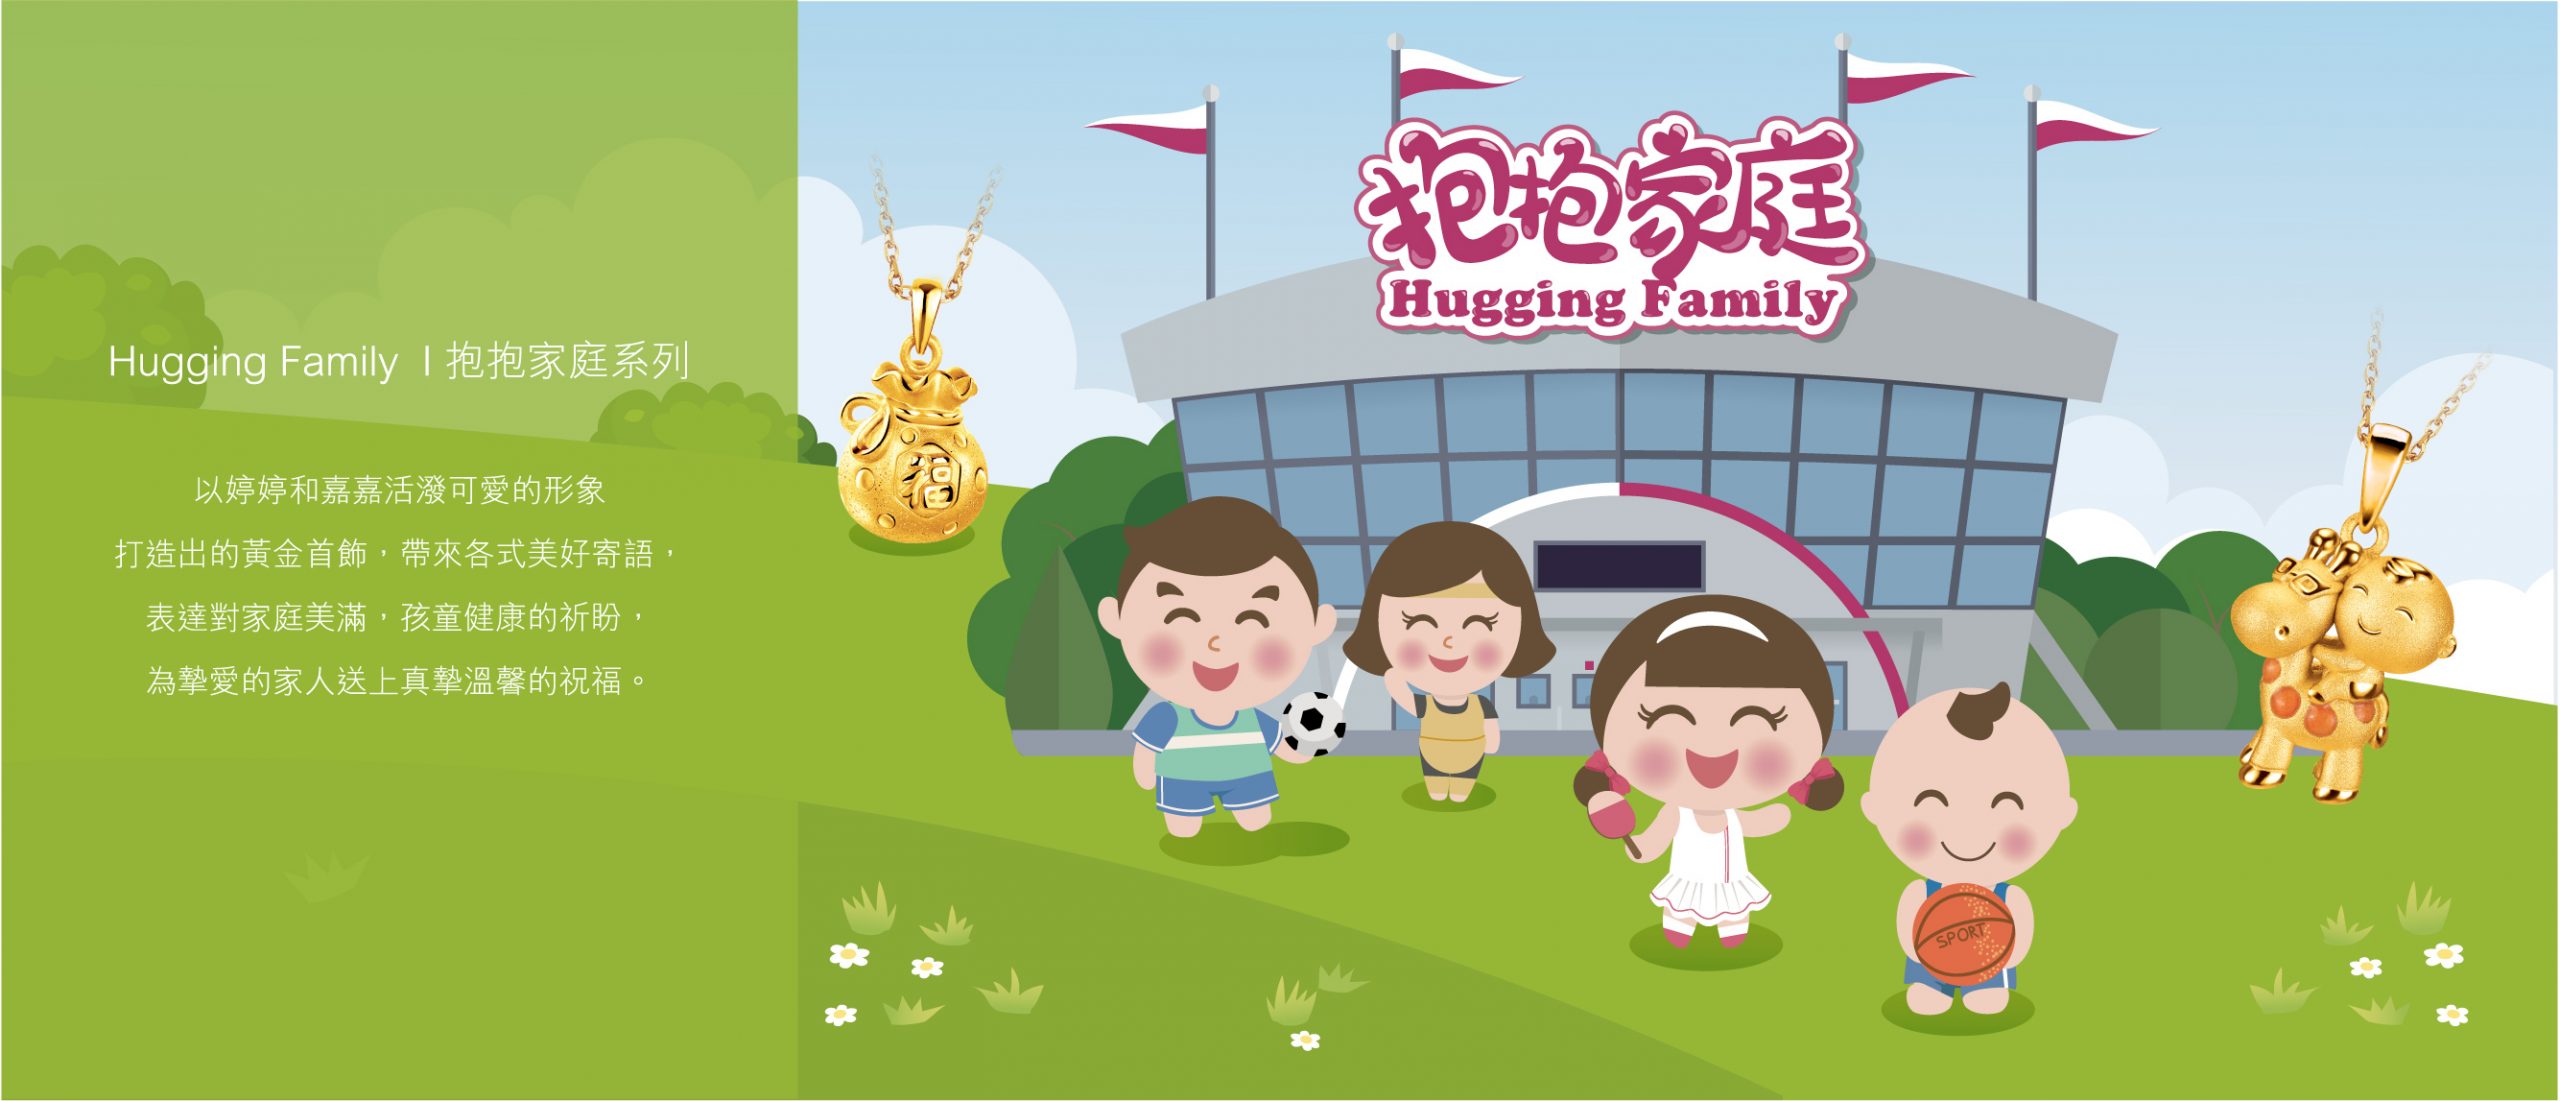 六福珠寶 - Hugging Family | 抱抱家庭系列  Banner